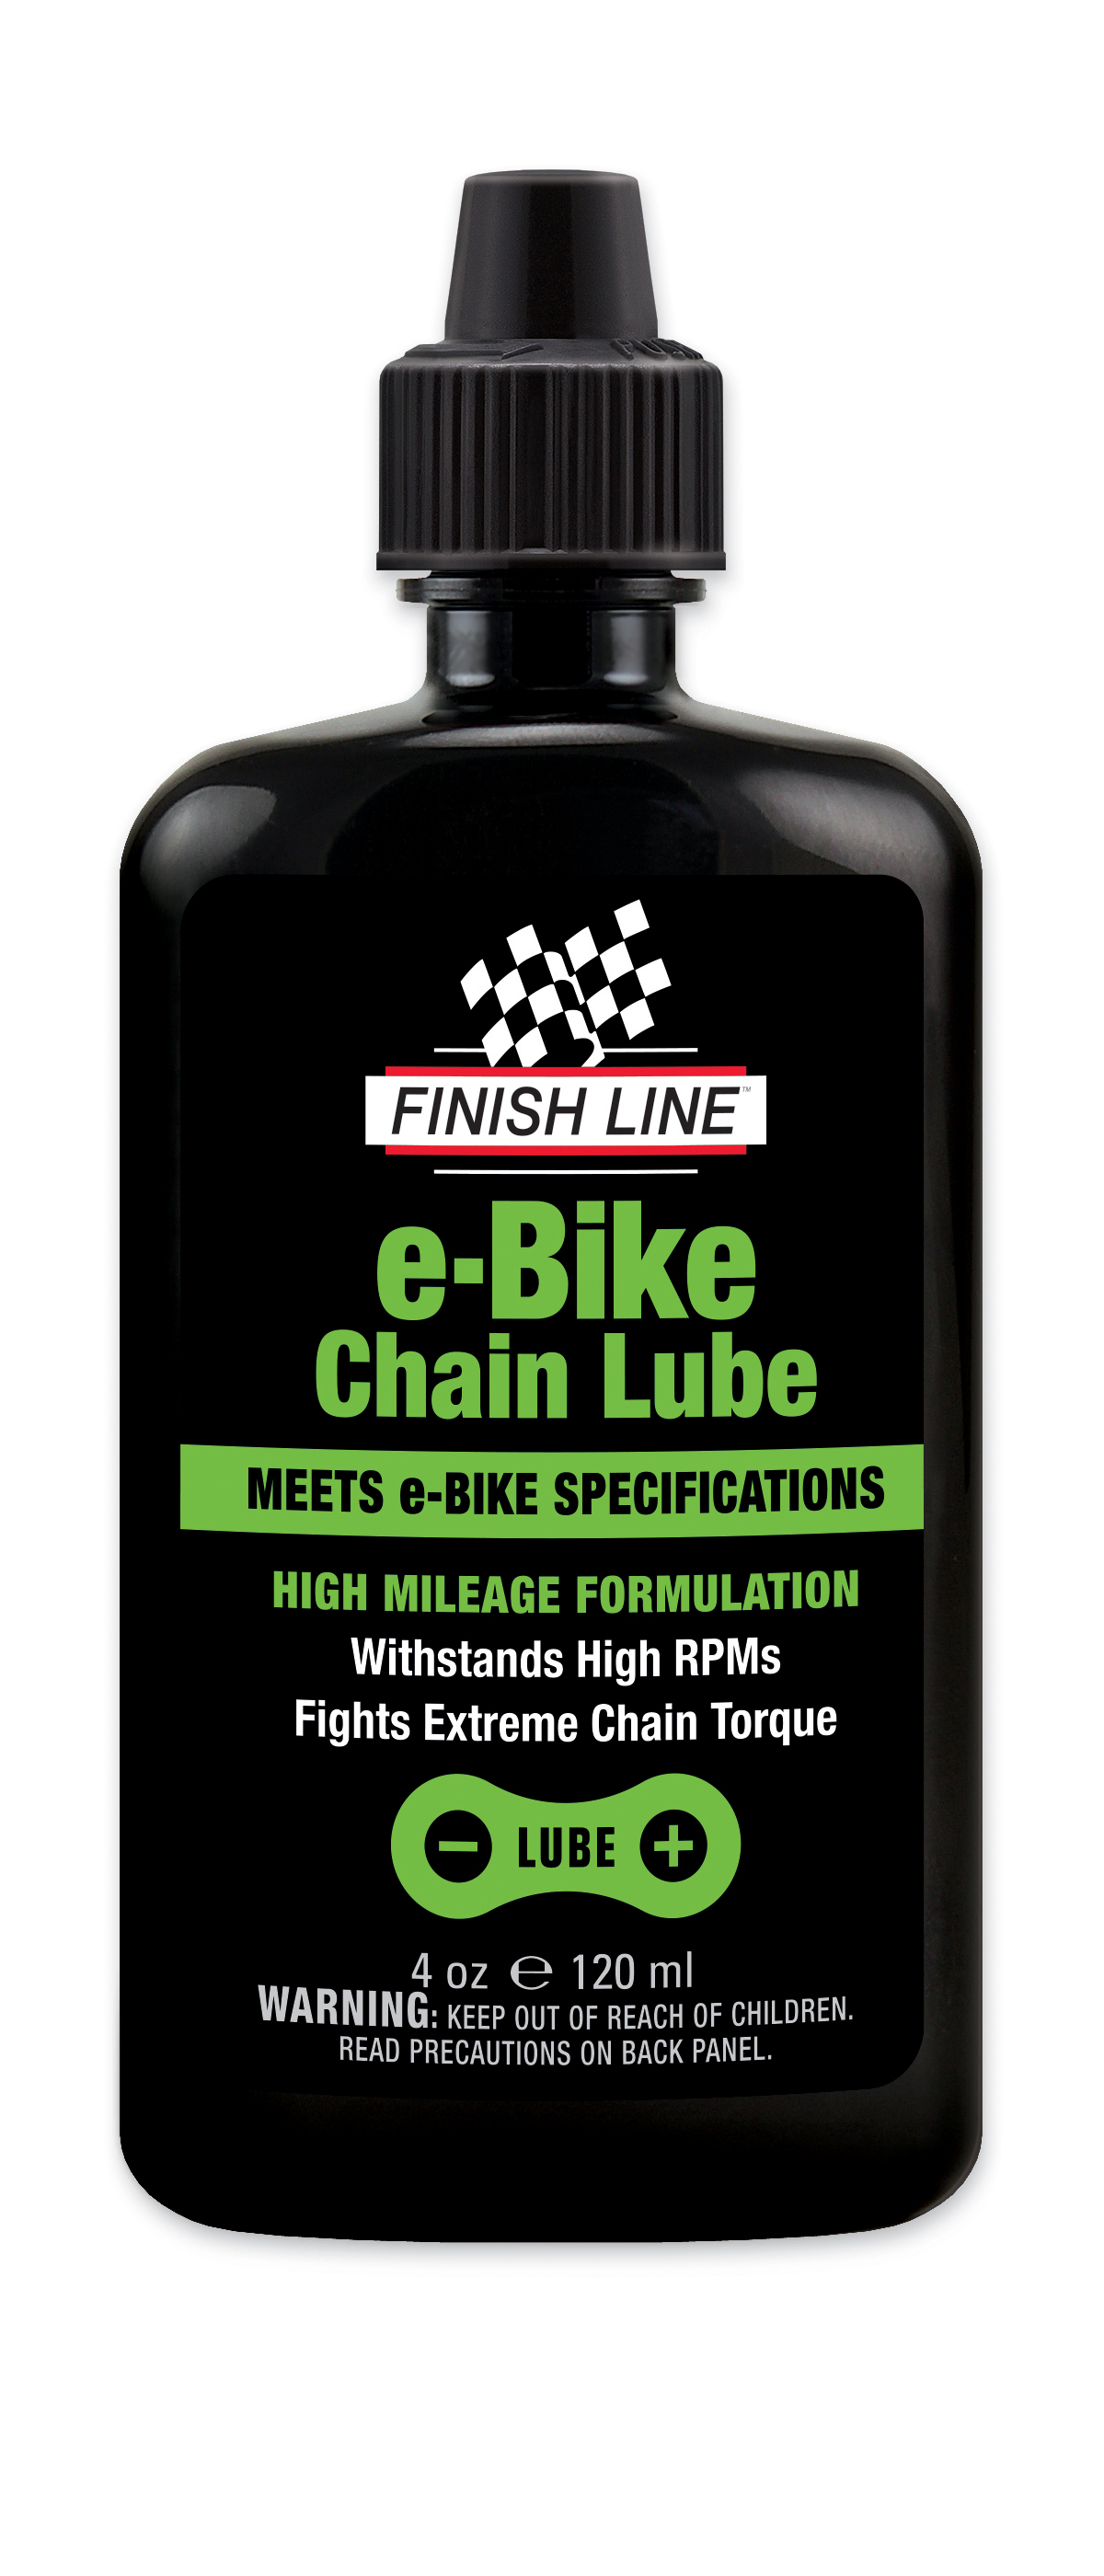 E-Bike Lube